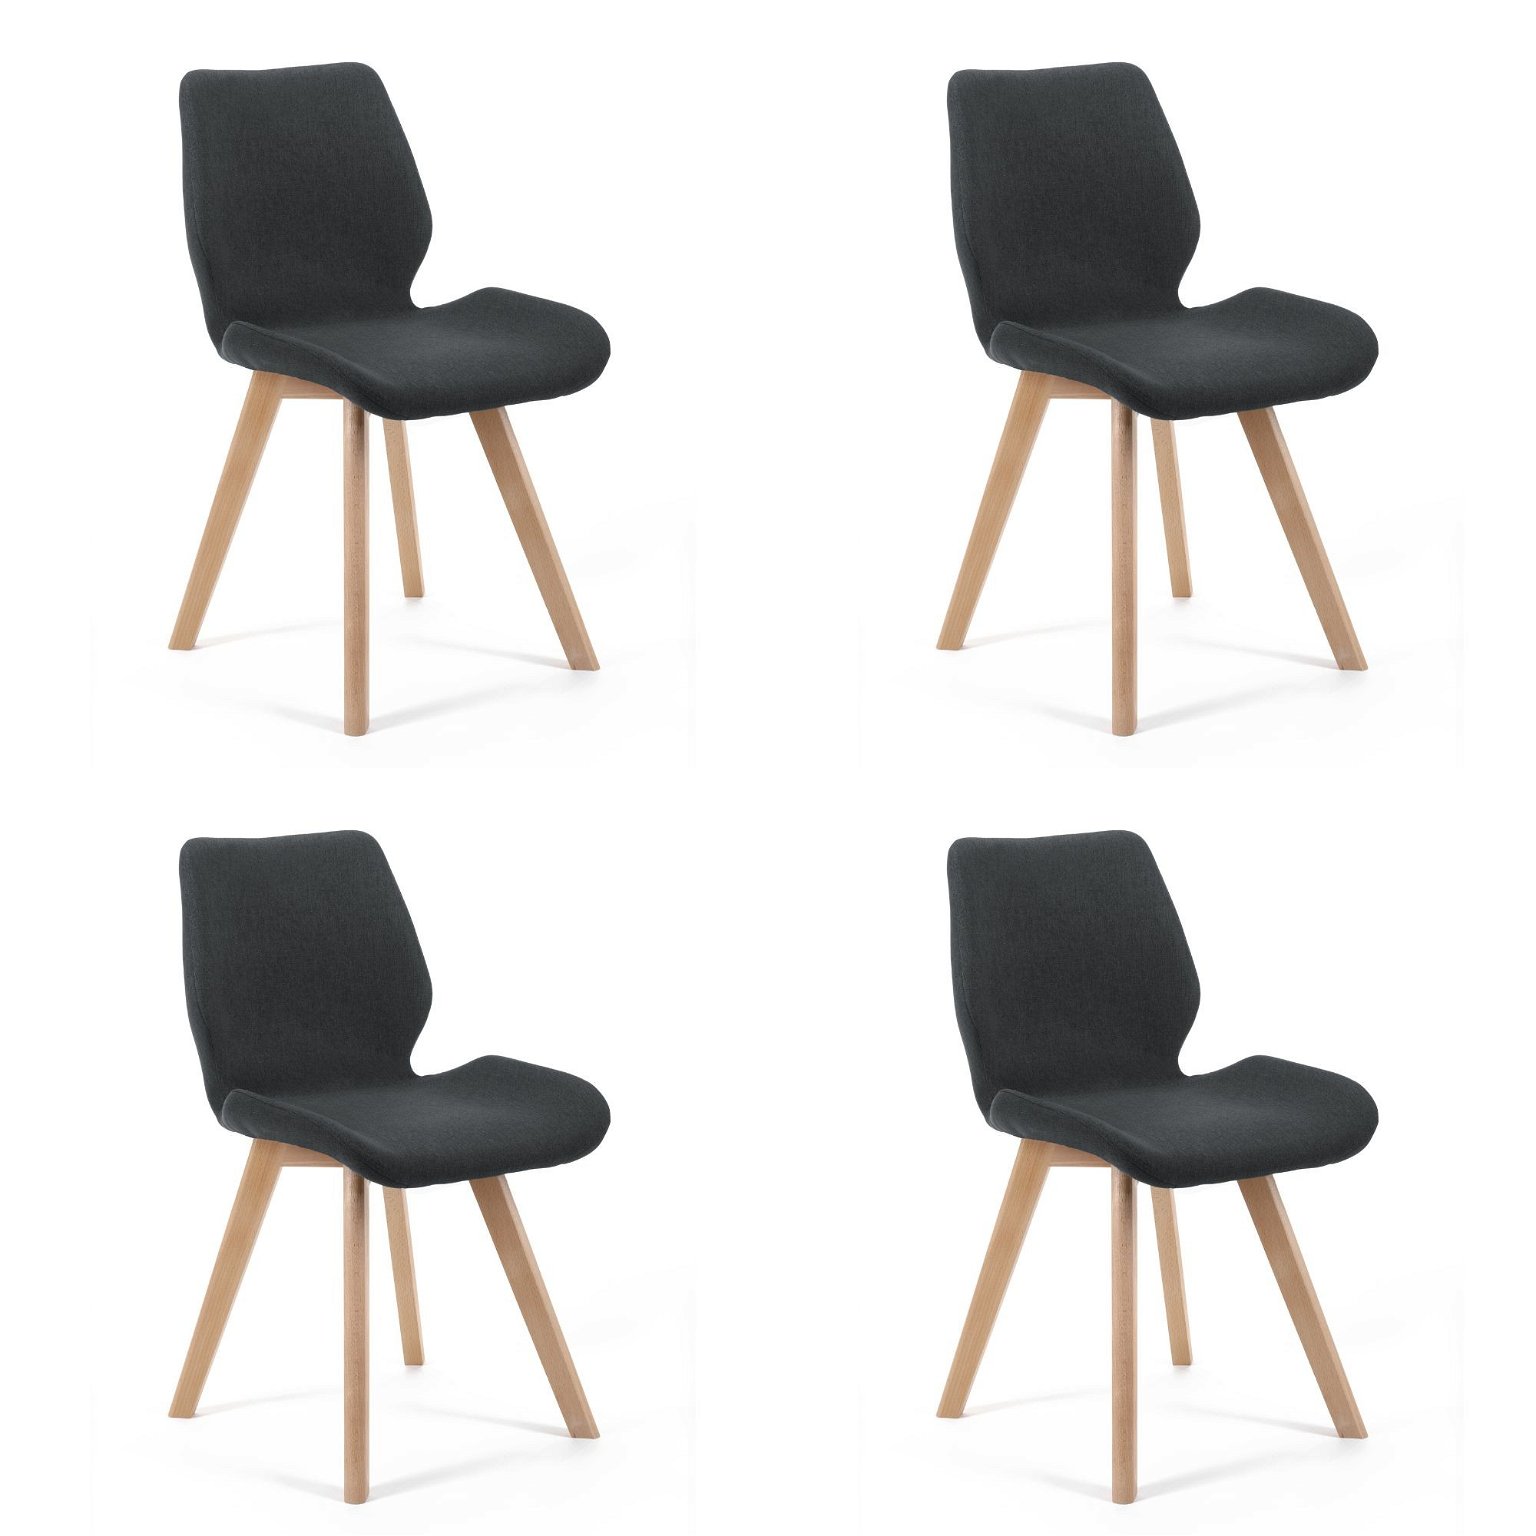 4-rių kėdžių komplektas SJ.0159, juodas - 2